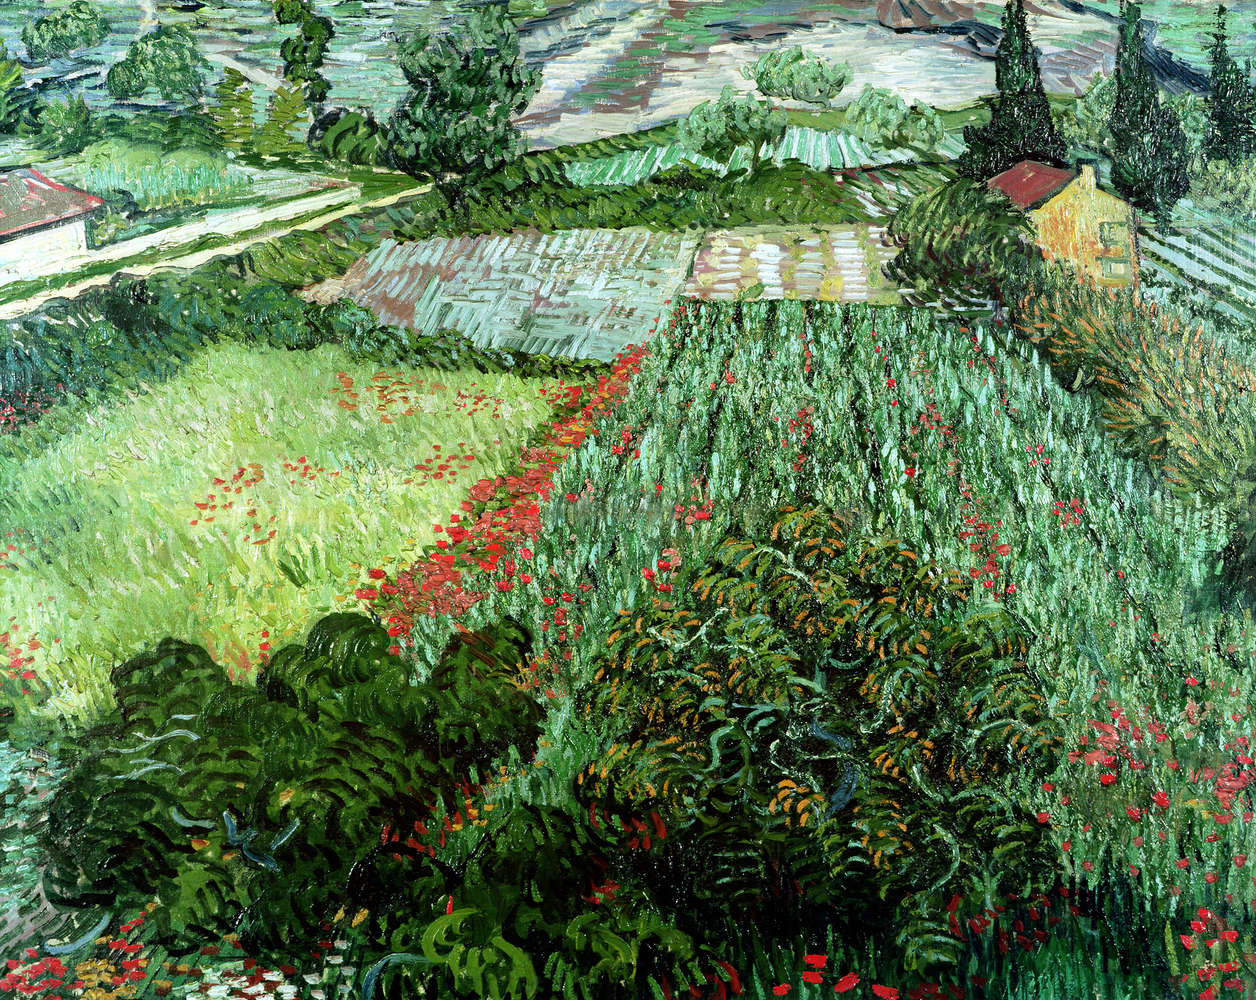             Veld met klaprozen" muurschildering van Vincent van Gogh
        